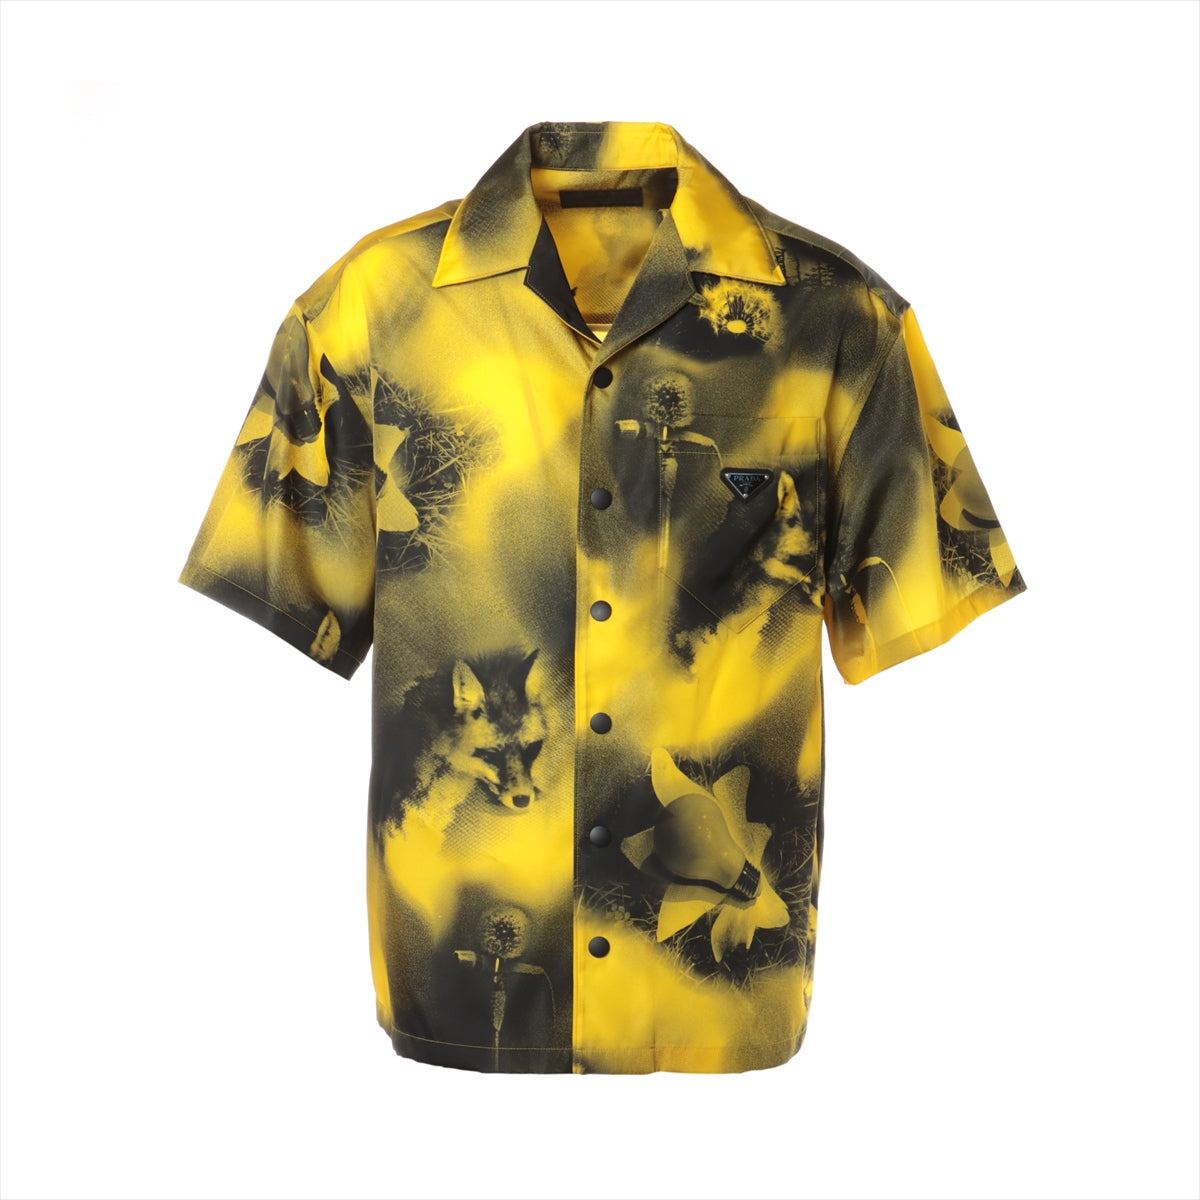 Prada Triangle logo 22 years Nylon Shirt S Men's Black x yellow Re